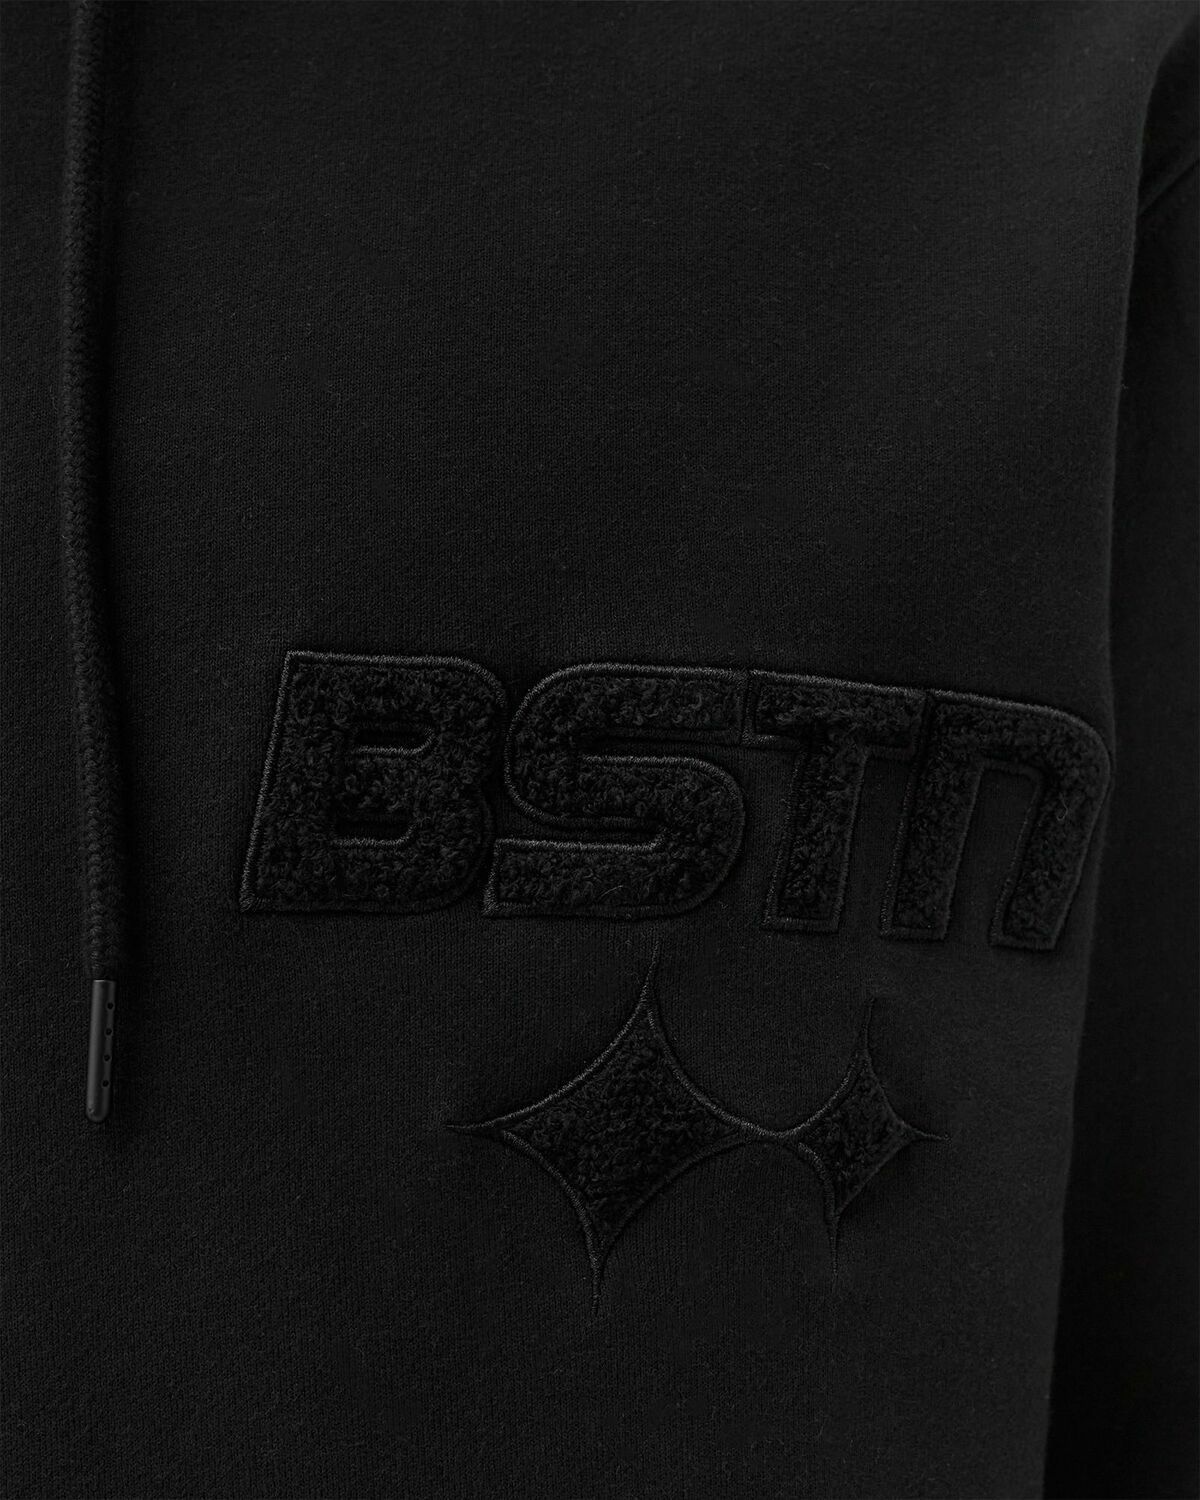 Bstn Brand Peached  Logo Hoody Black - Mens - Hoodies